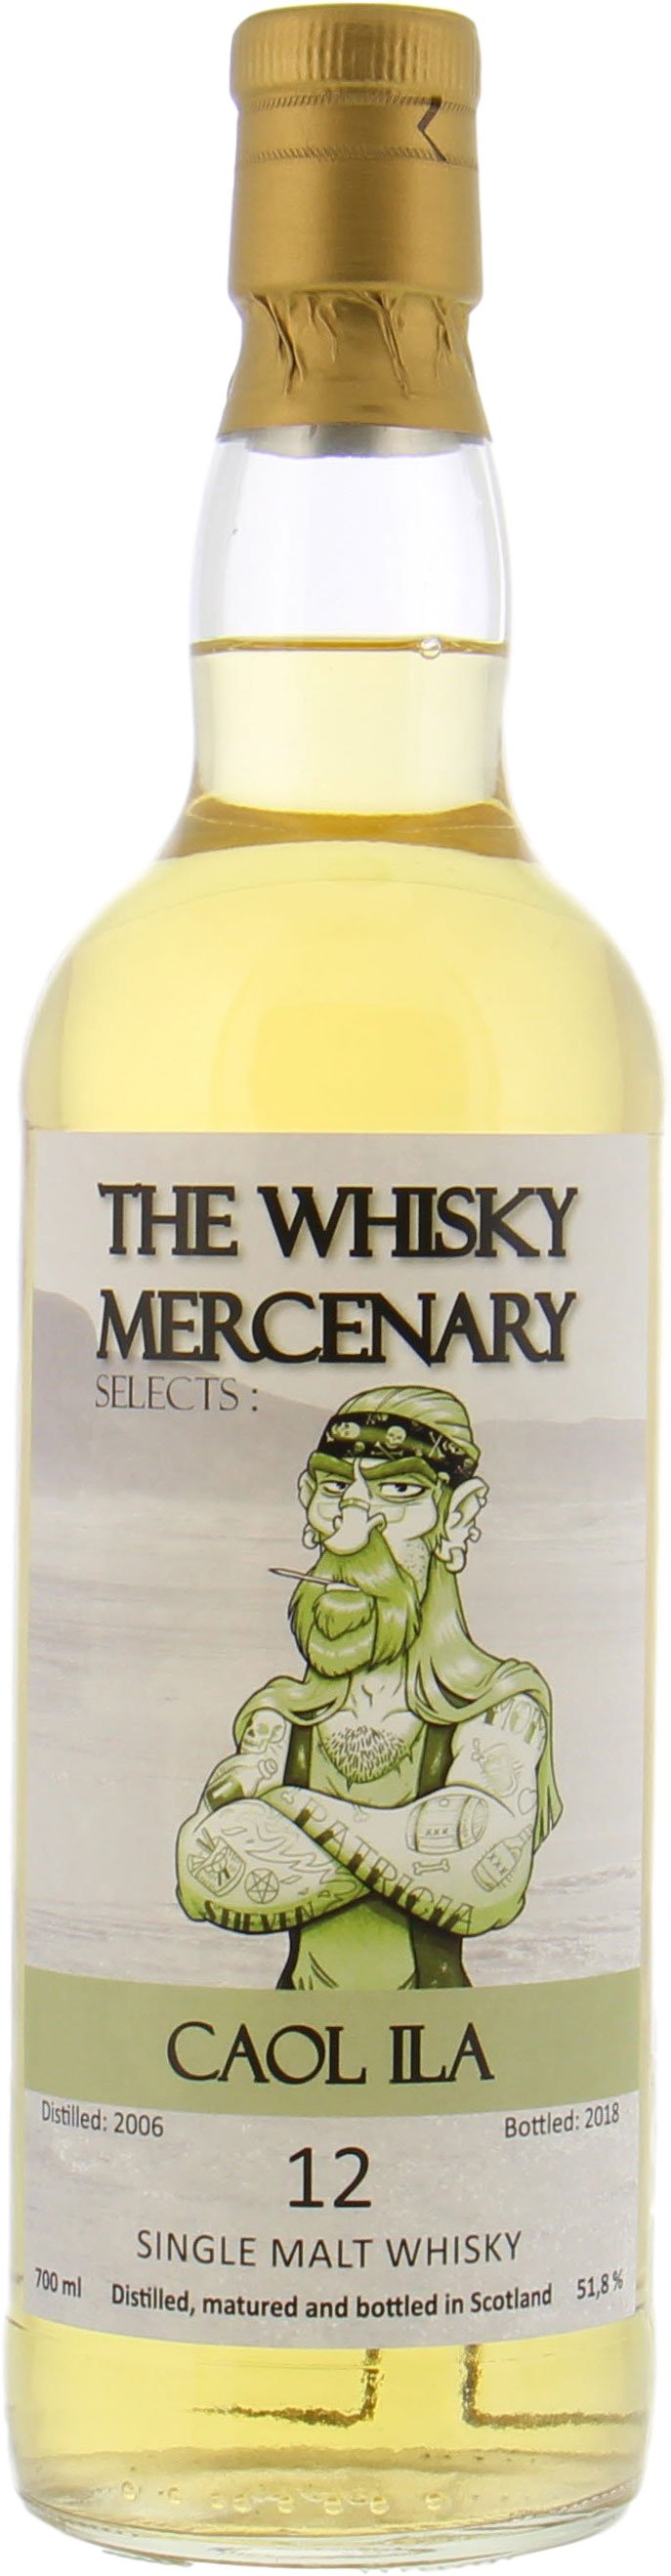 Caol Ila - 12 Years Old The Whisky Mercenary 51.8% 2006